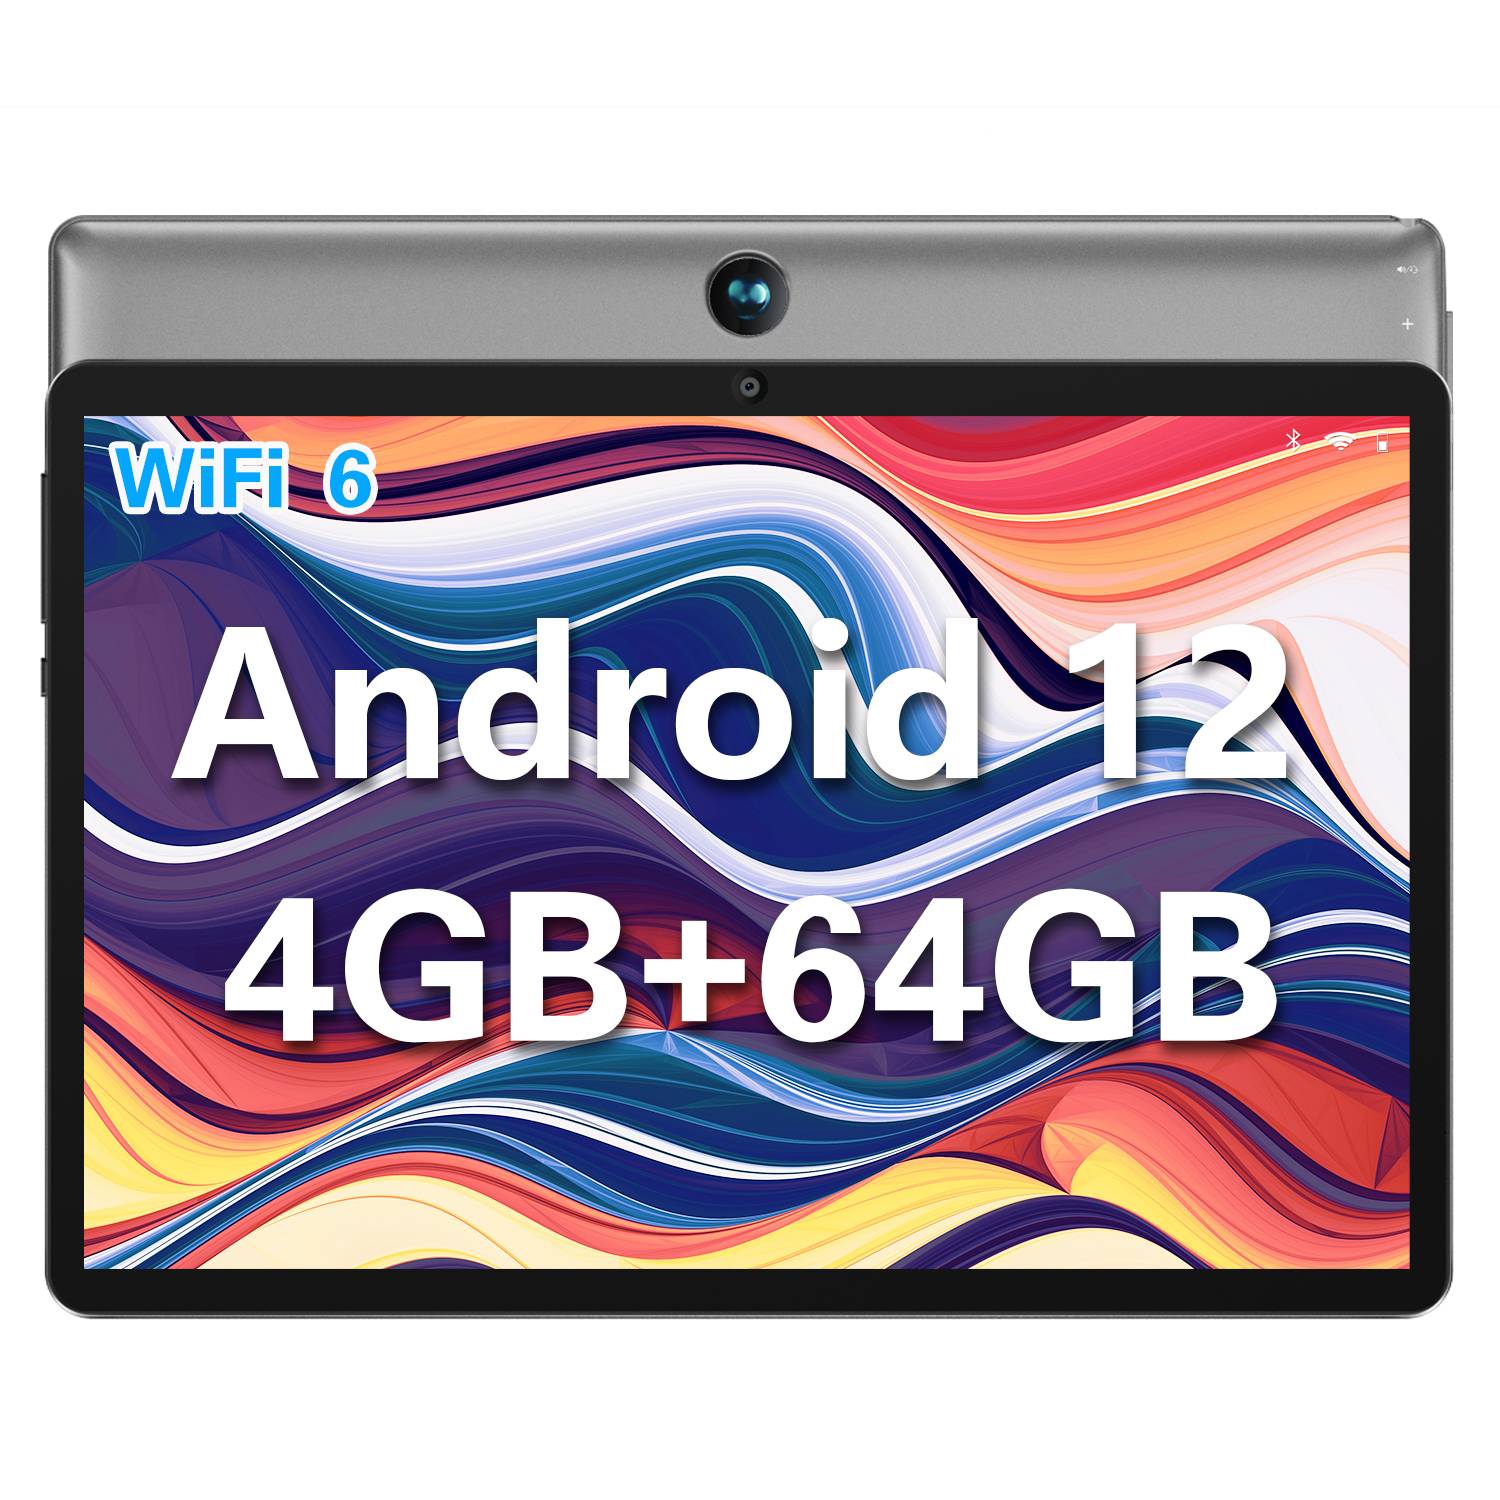 大幅な値引き】Android 12 タブレット、最低価格はわずか9,999円、期間